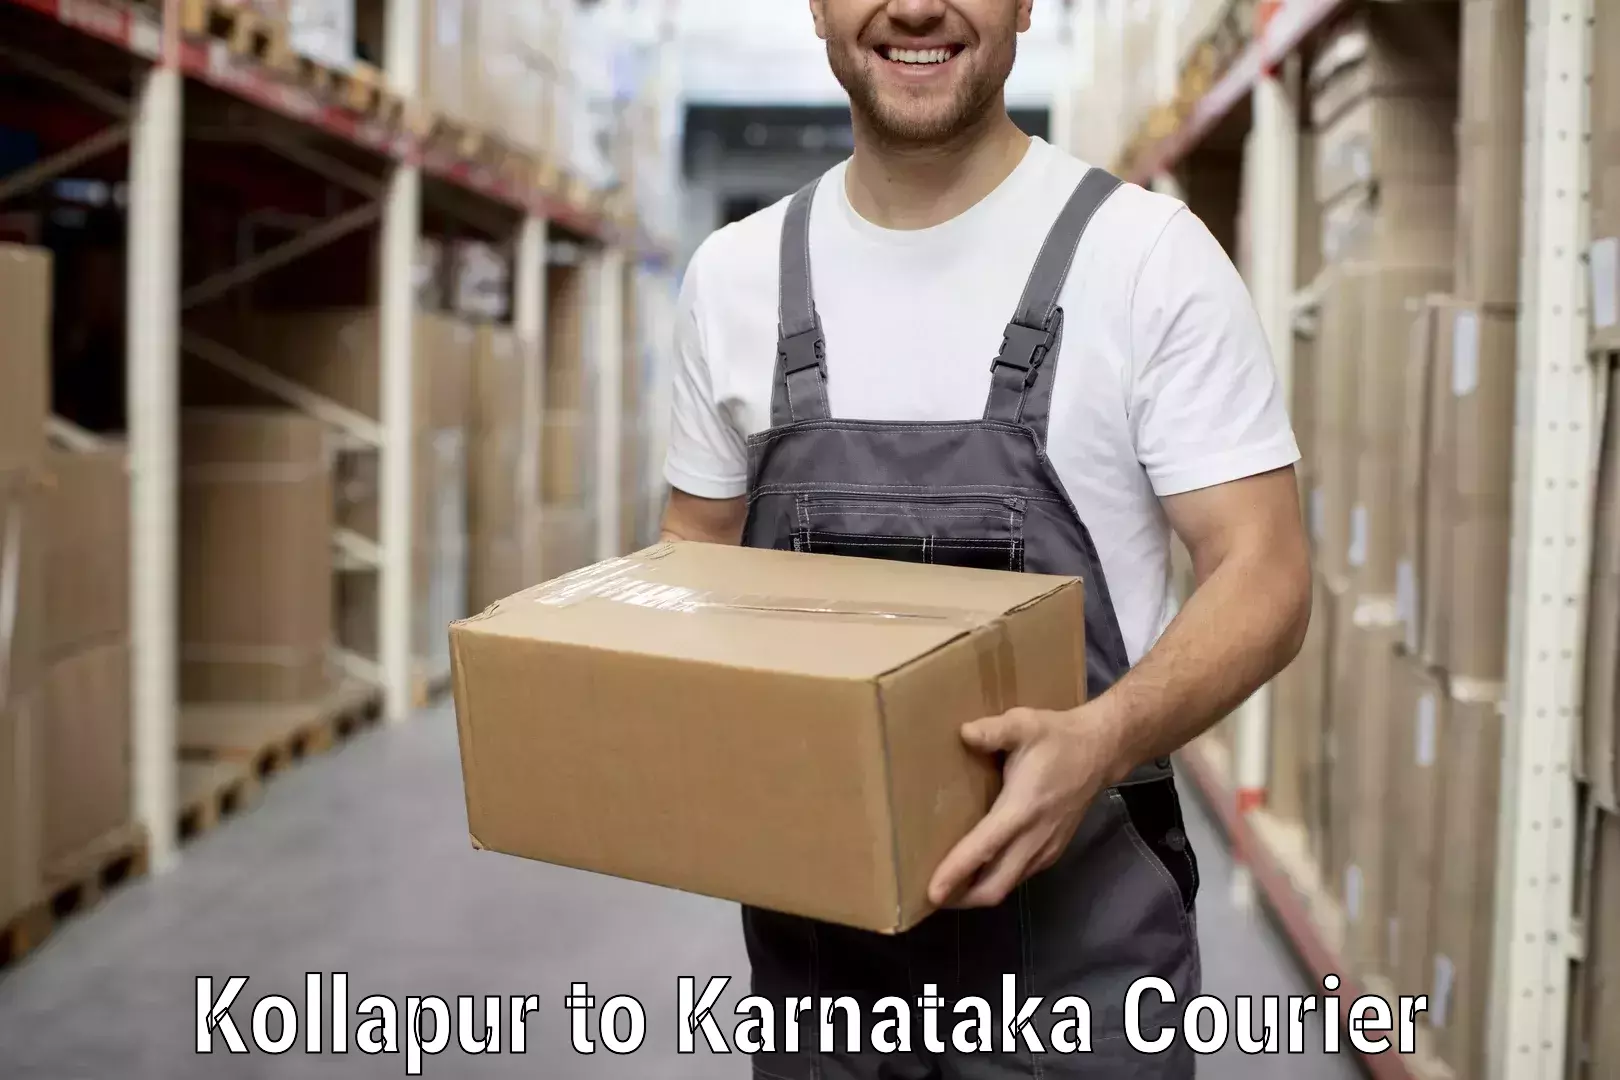 Budget-friendly moving services Kollapur to Kanakapura